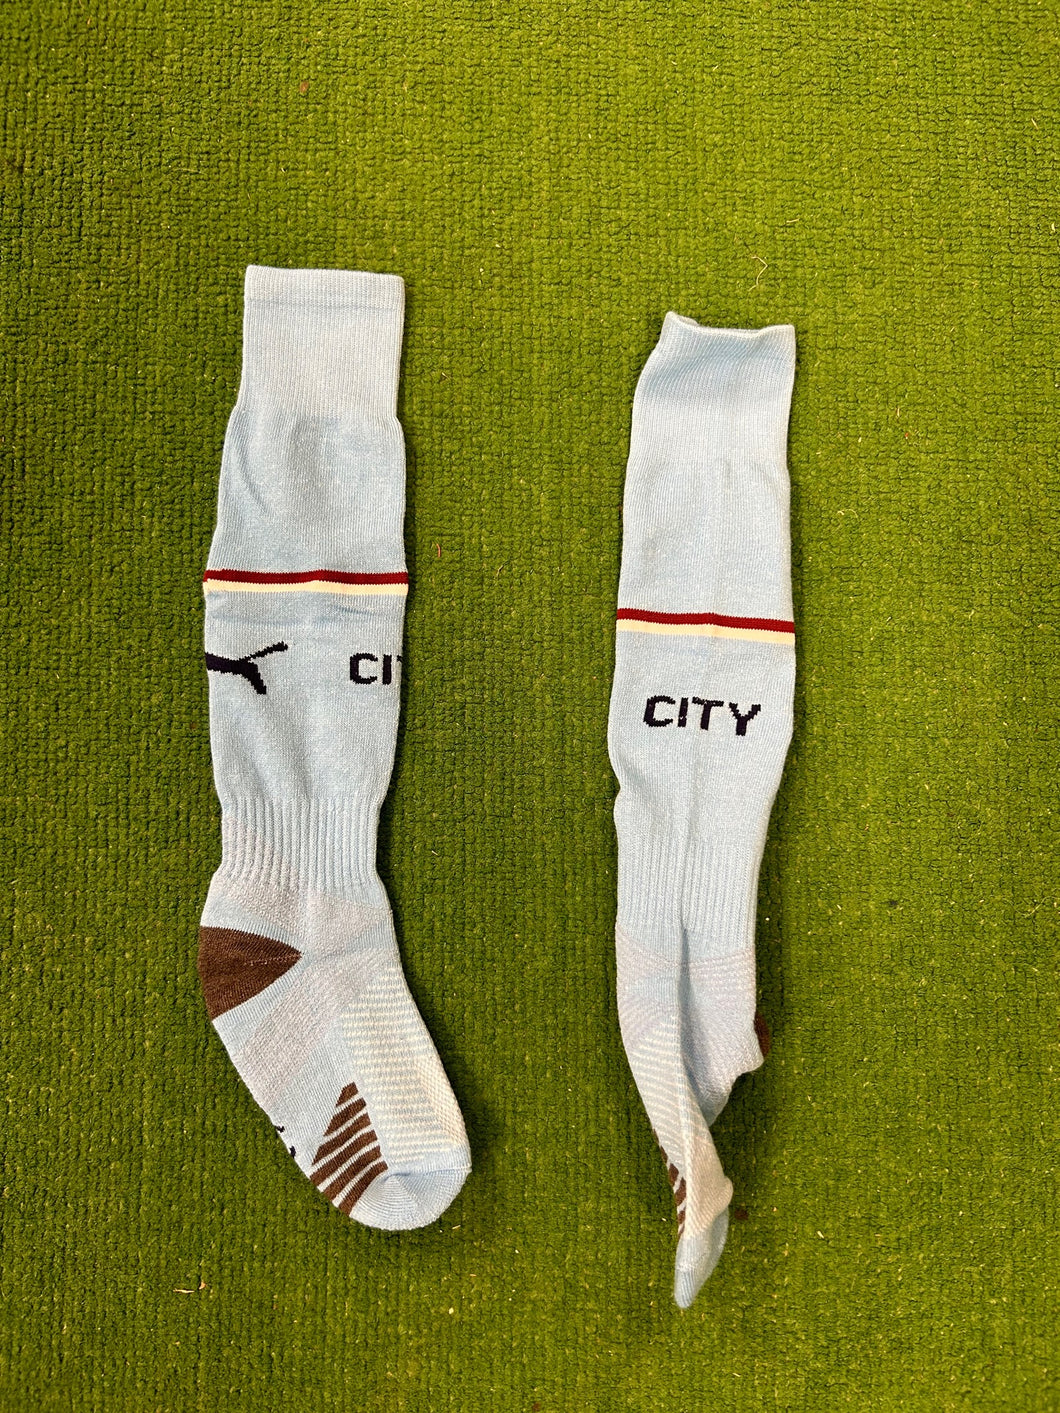 Manchester City Soccer Socks